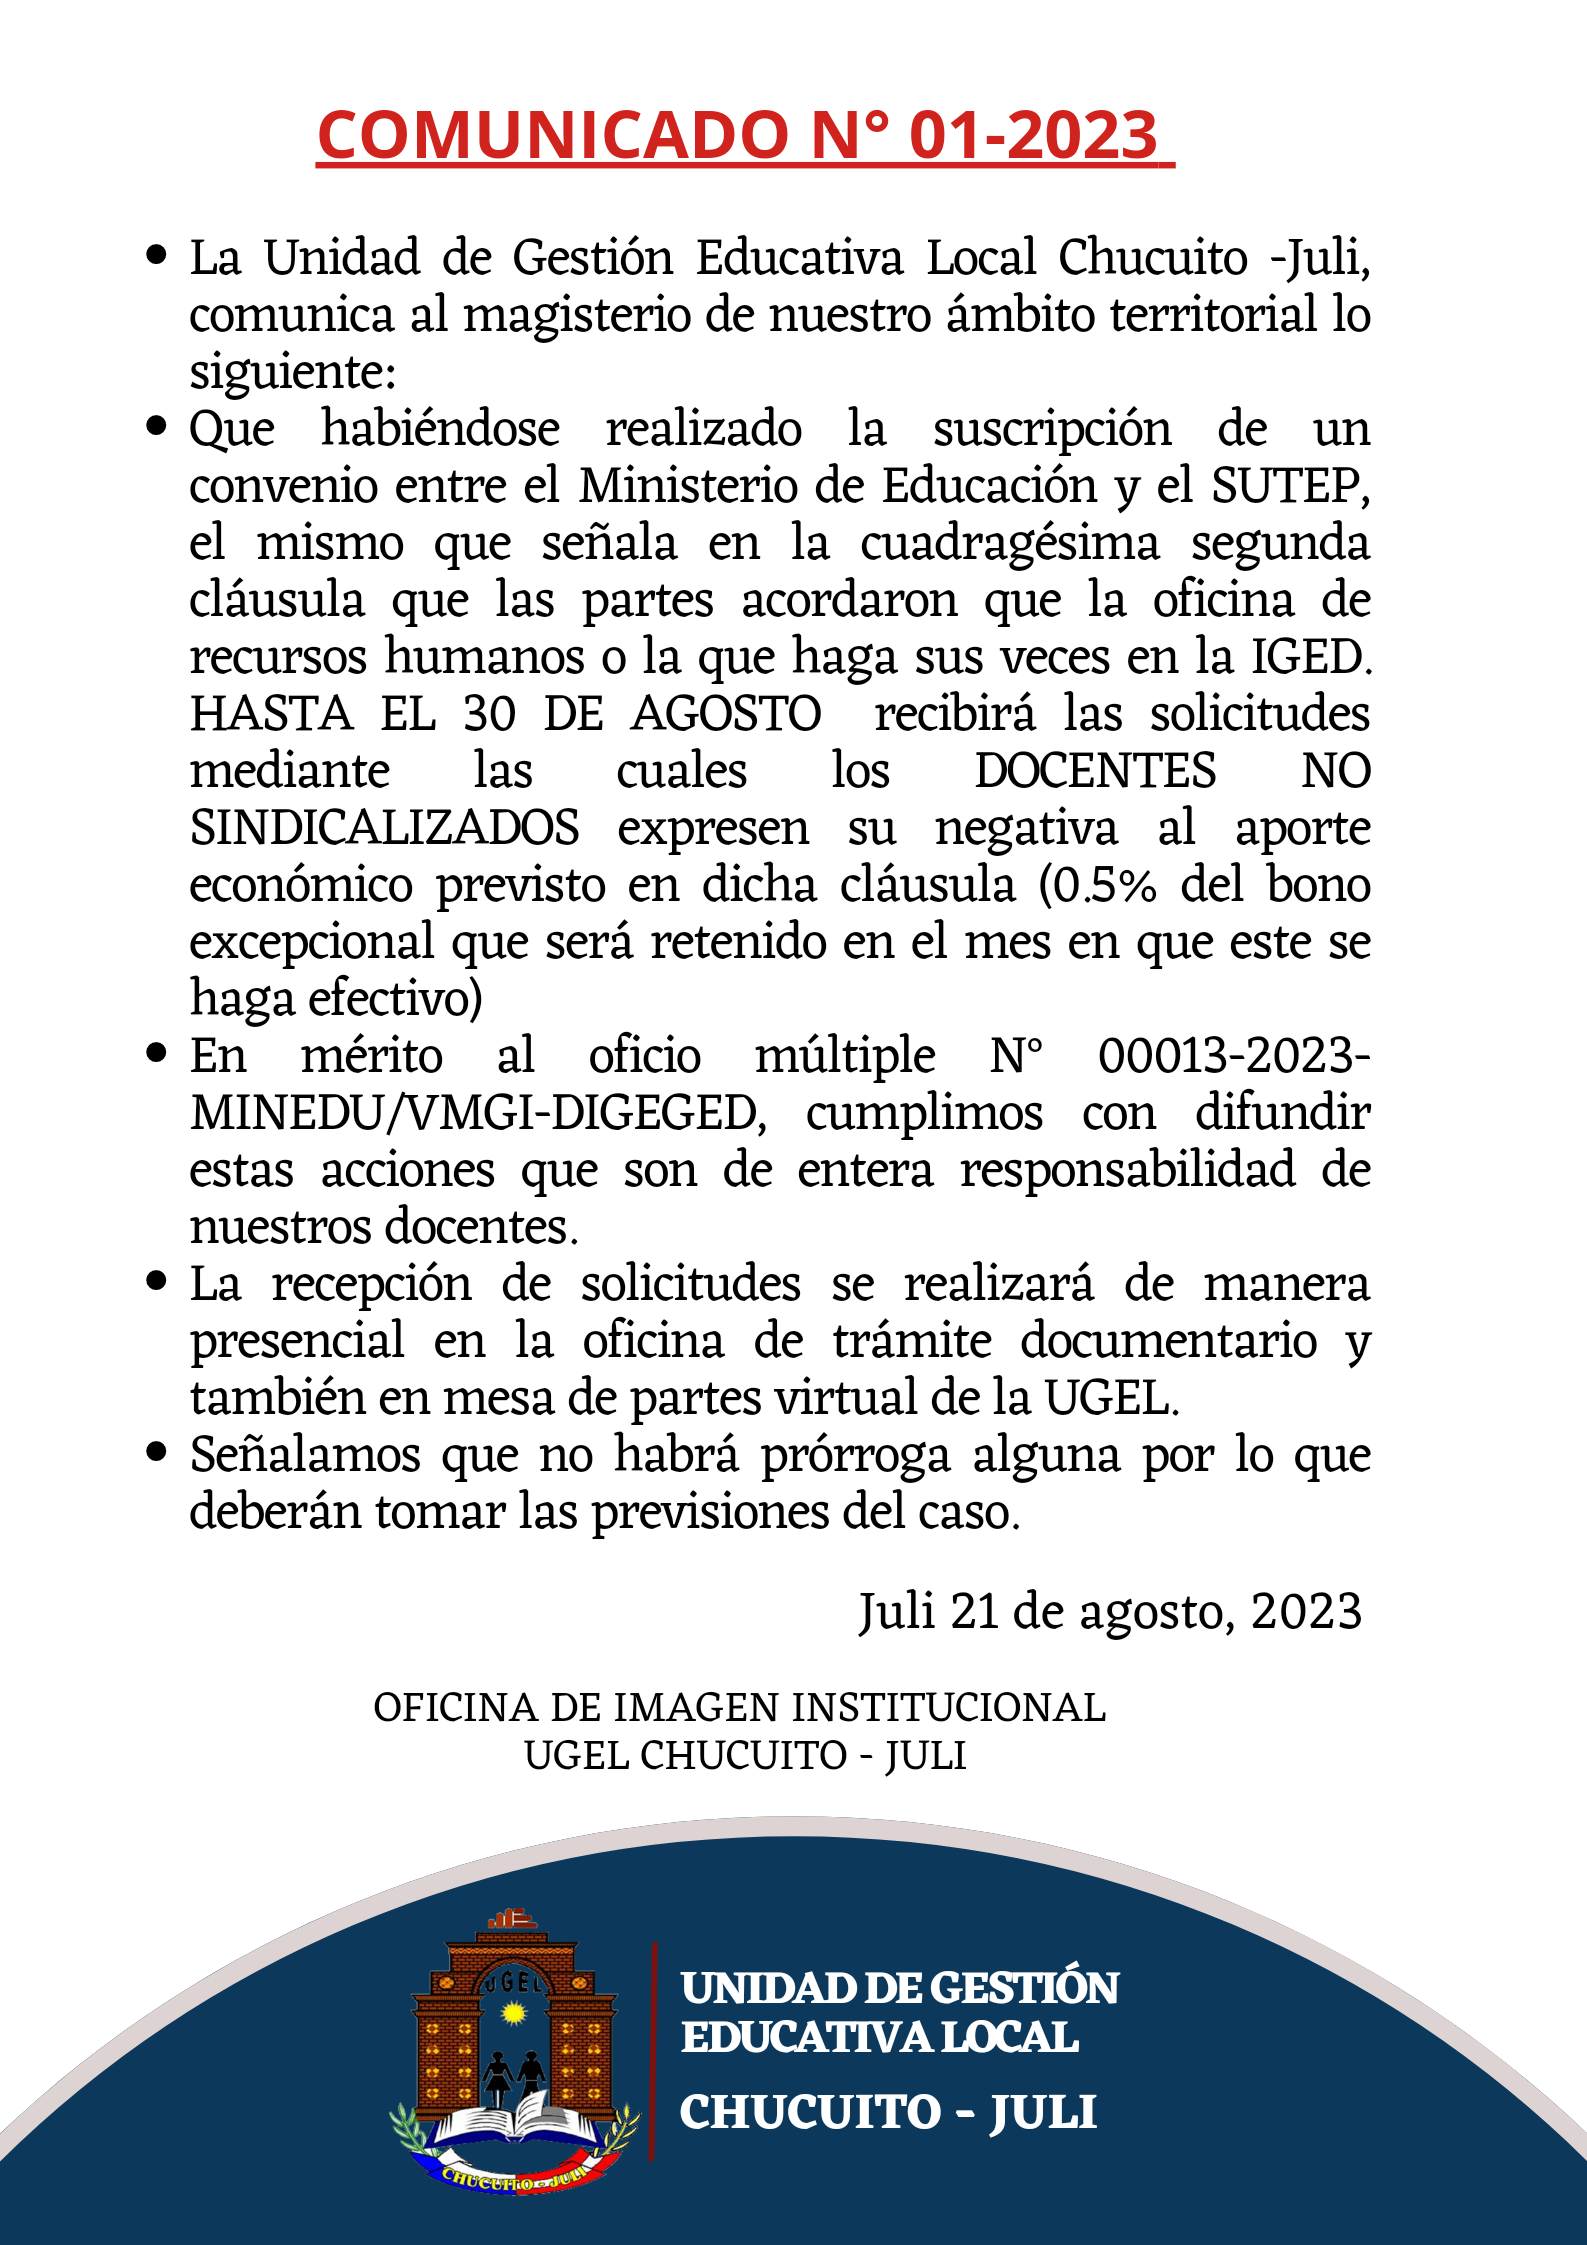 ((🔴)) ATENCIÓN DOCENTES DE LA COMUNIDAD EDUCATIVA DEL AMBITO DE LA UGEL CHUCUITO JULI ((🔴))